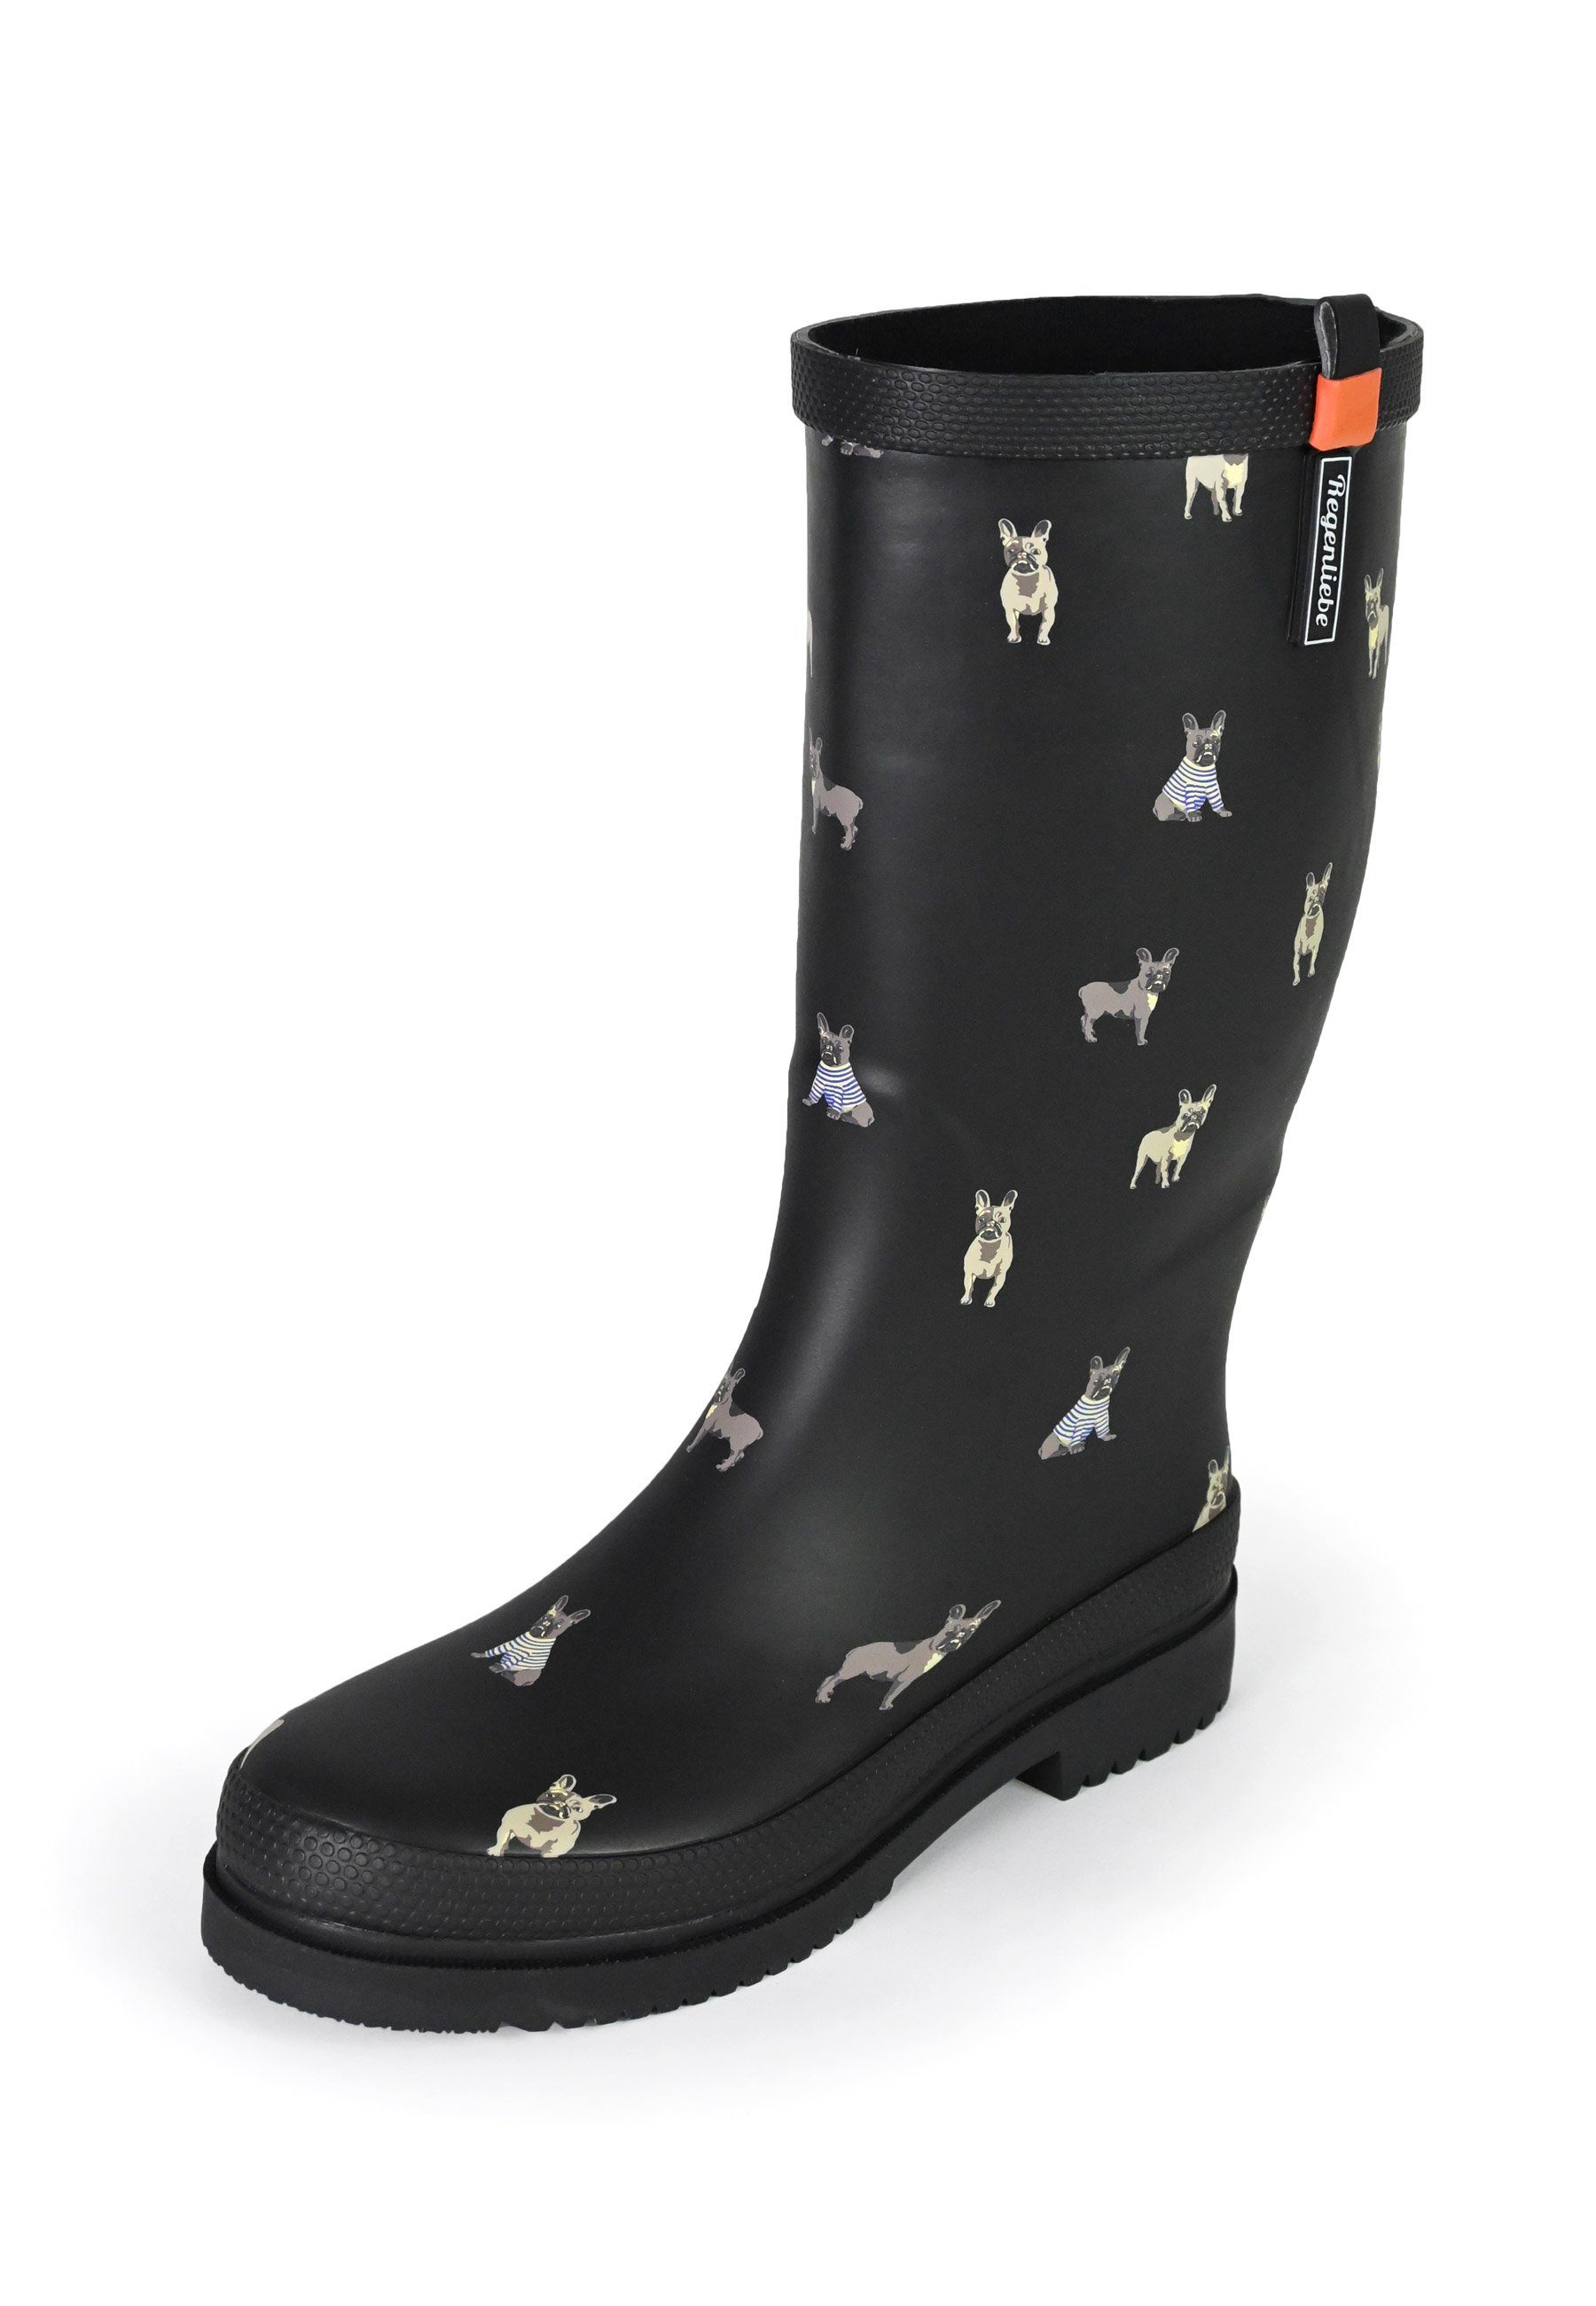 Regenliebe Waldi Mops High Gummistiefel Langschaft Stiefel mit Hundemotiv | Gummistiefel